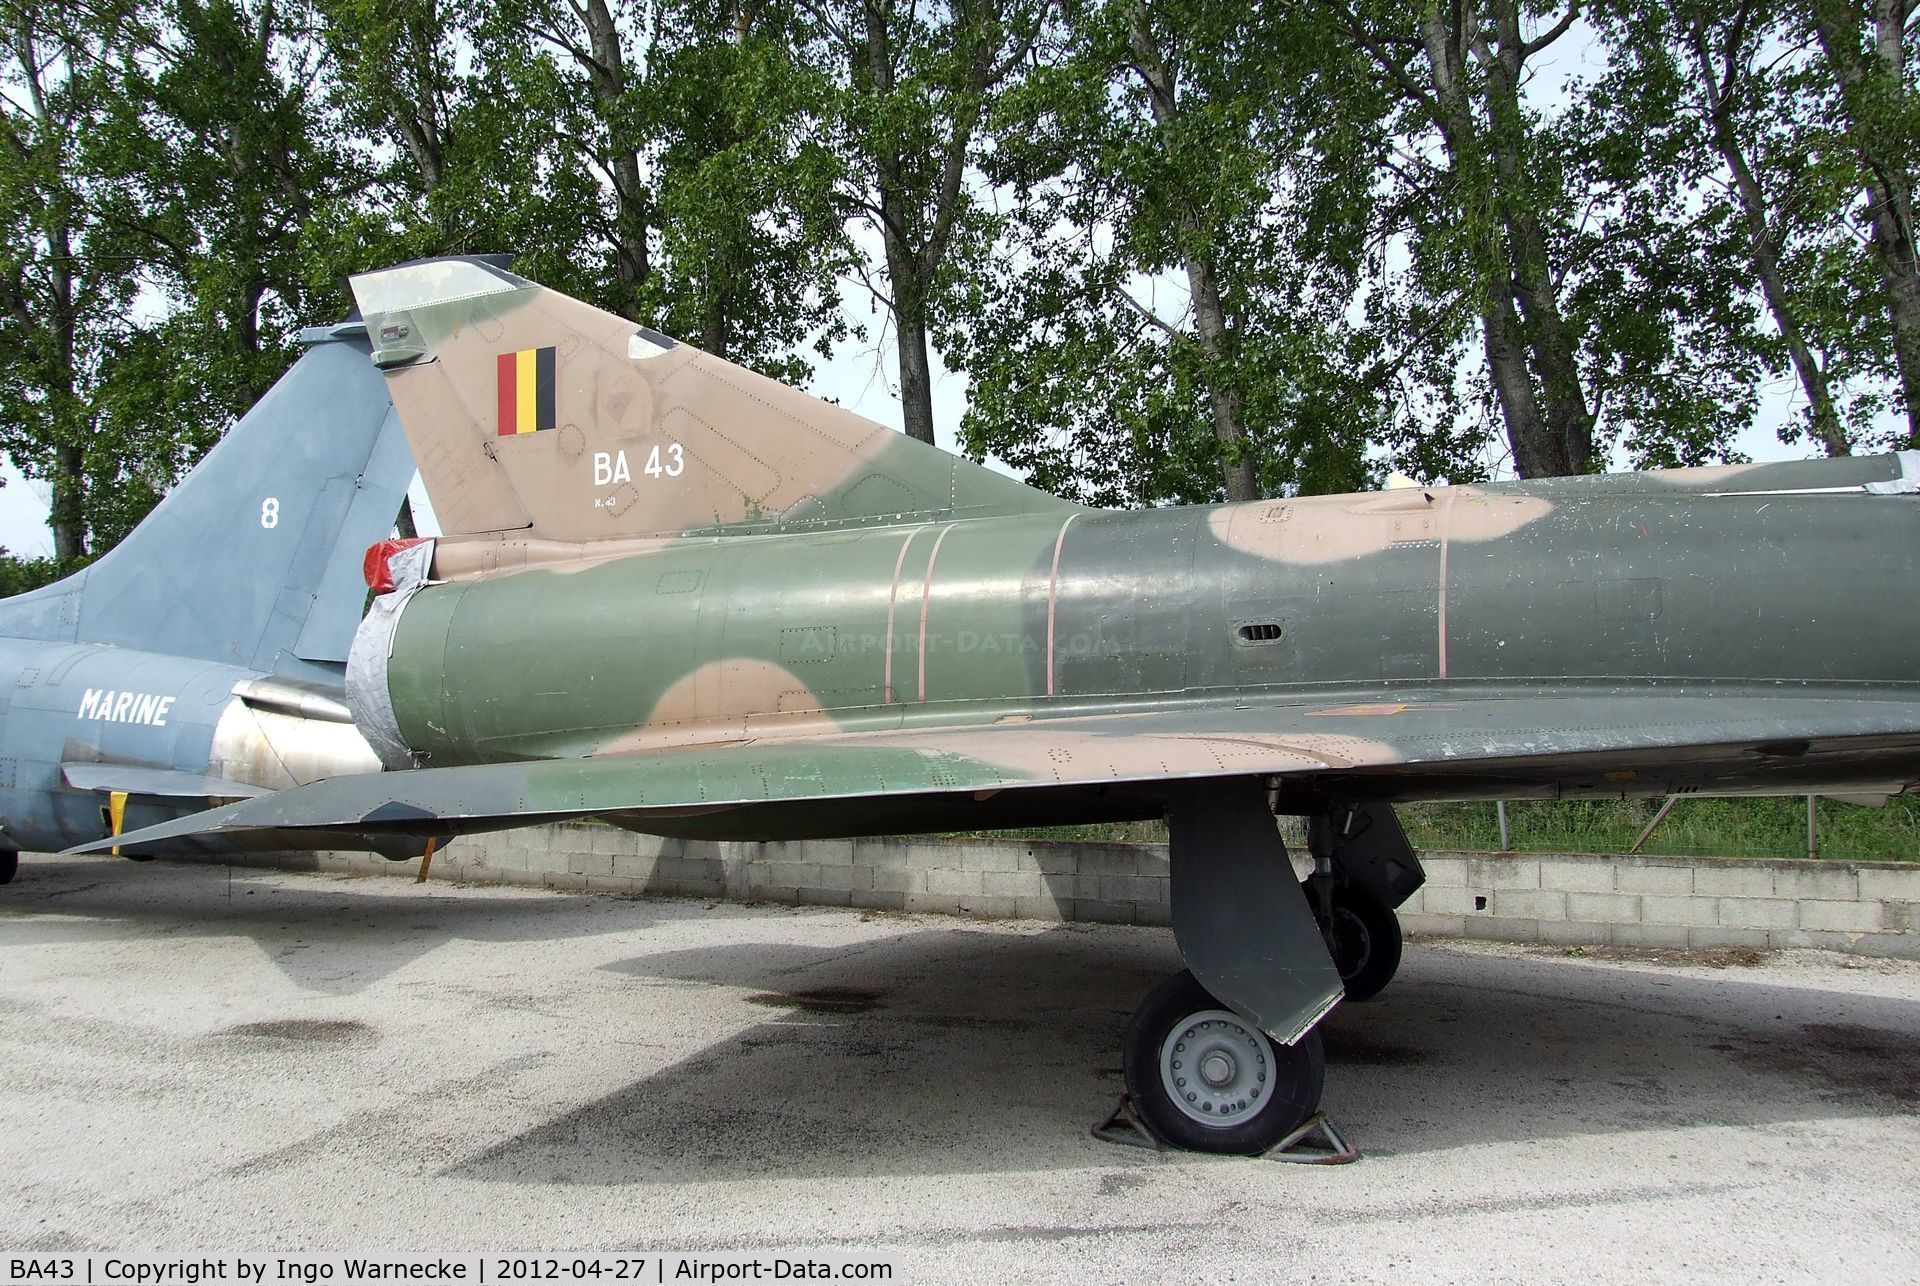 BA43, SABCA Mirage 5BA C/N 43, Dassault (SABCA) Mirage 5BA at the Musee Aeronautique, Orange